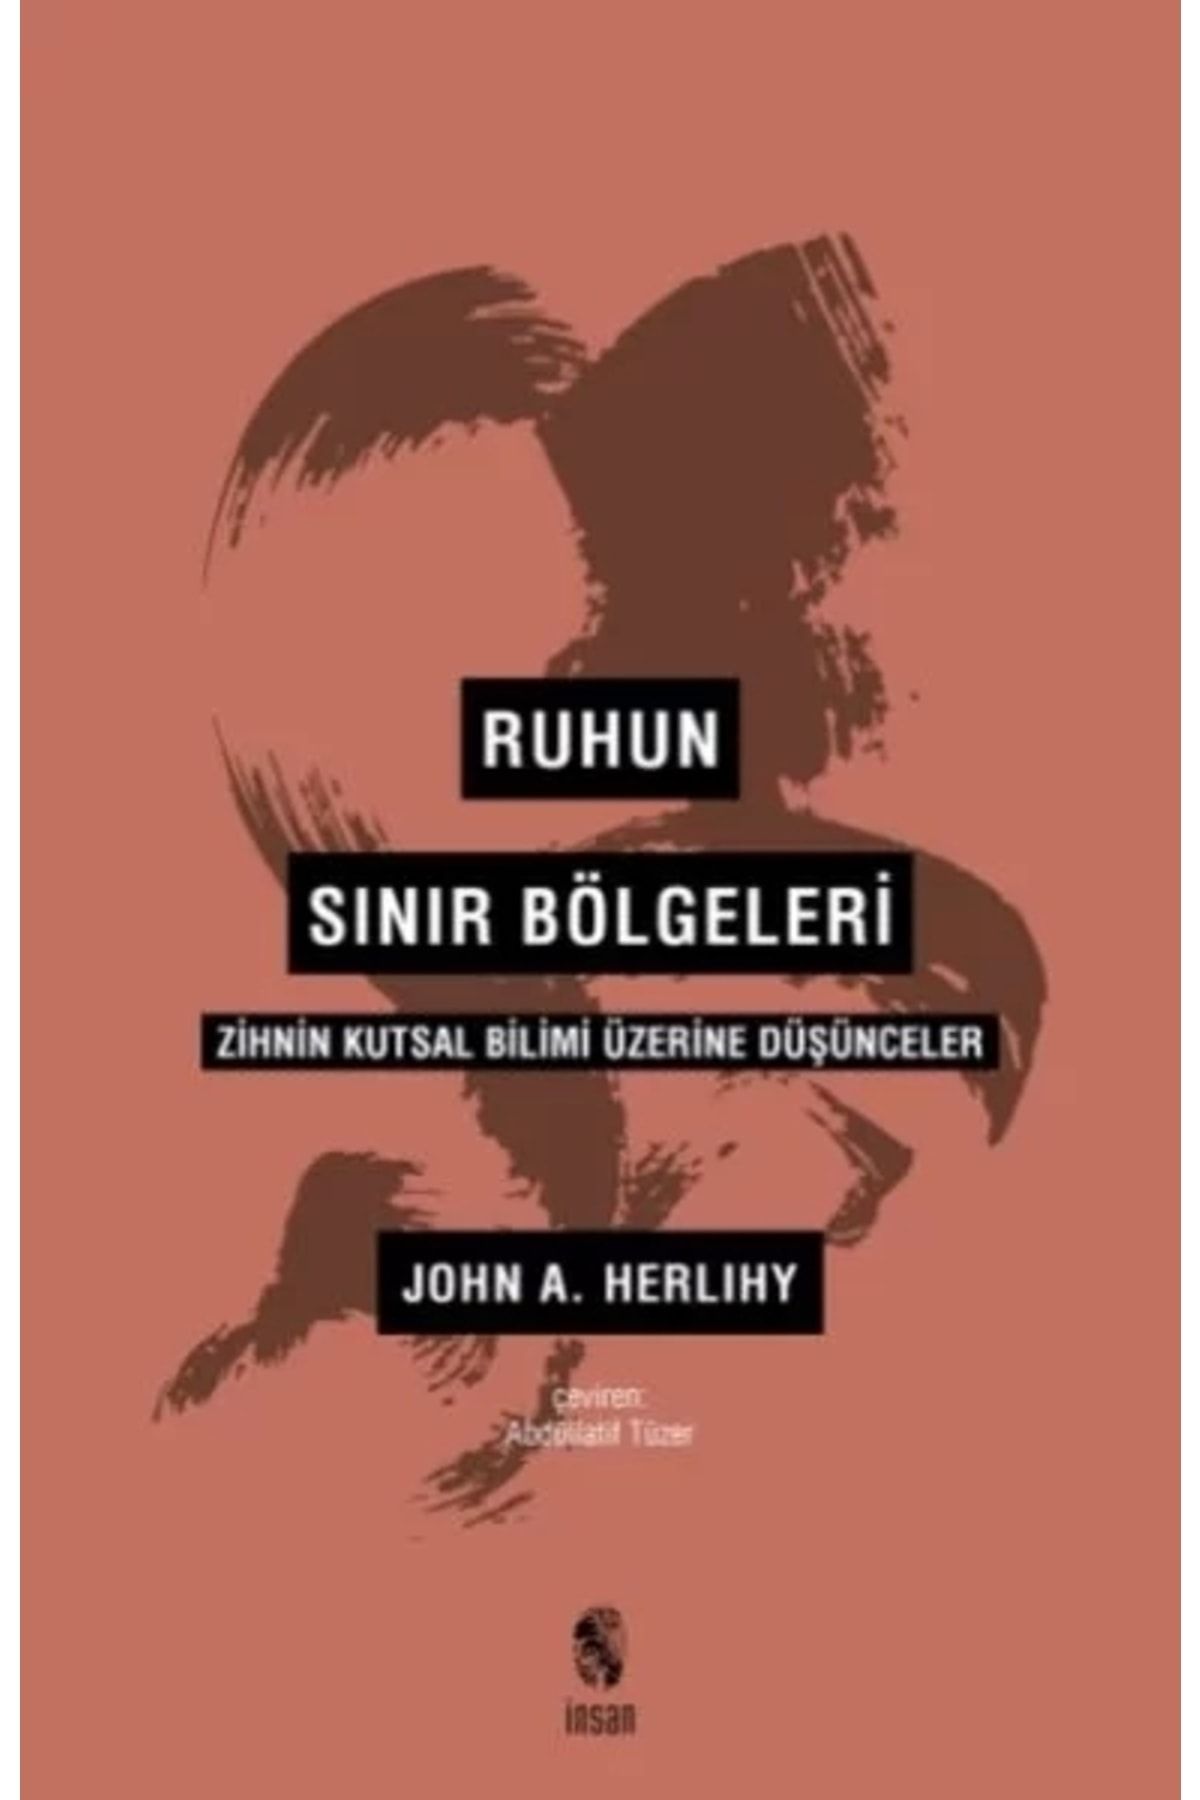 İnsan Yayınları Ruhun Sınır Bölgeleri - Zihnin Kutsal Bilimi Üzerine Düşünceler -John A. Herlihy